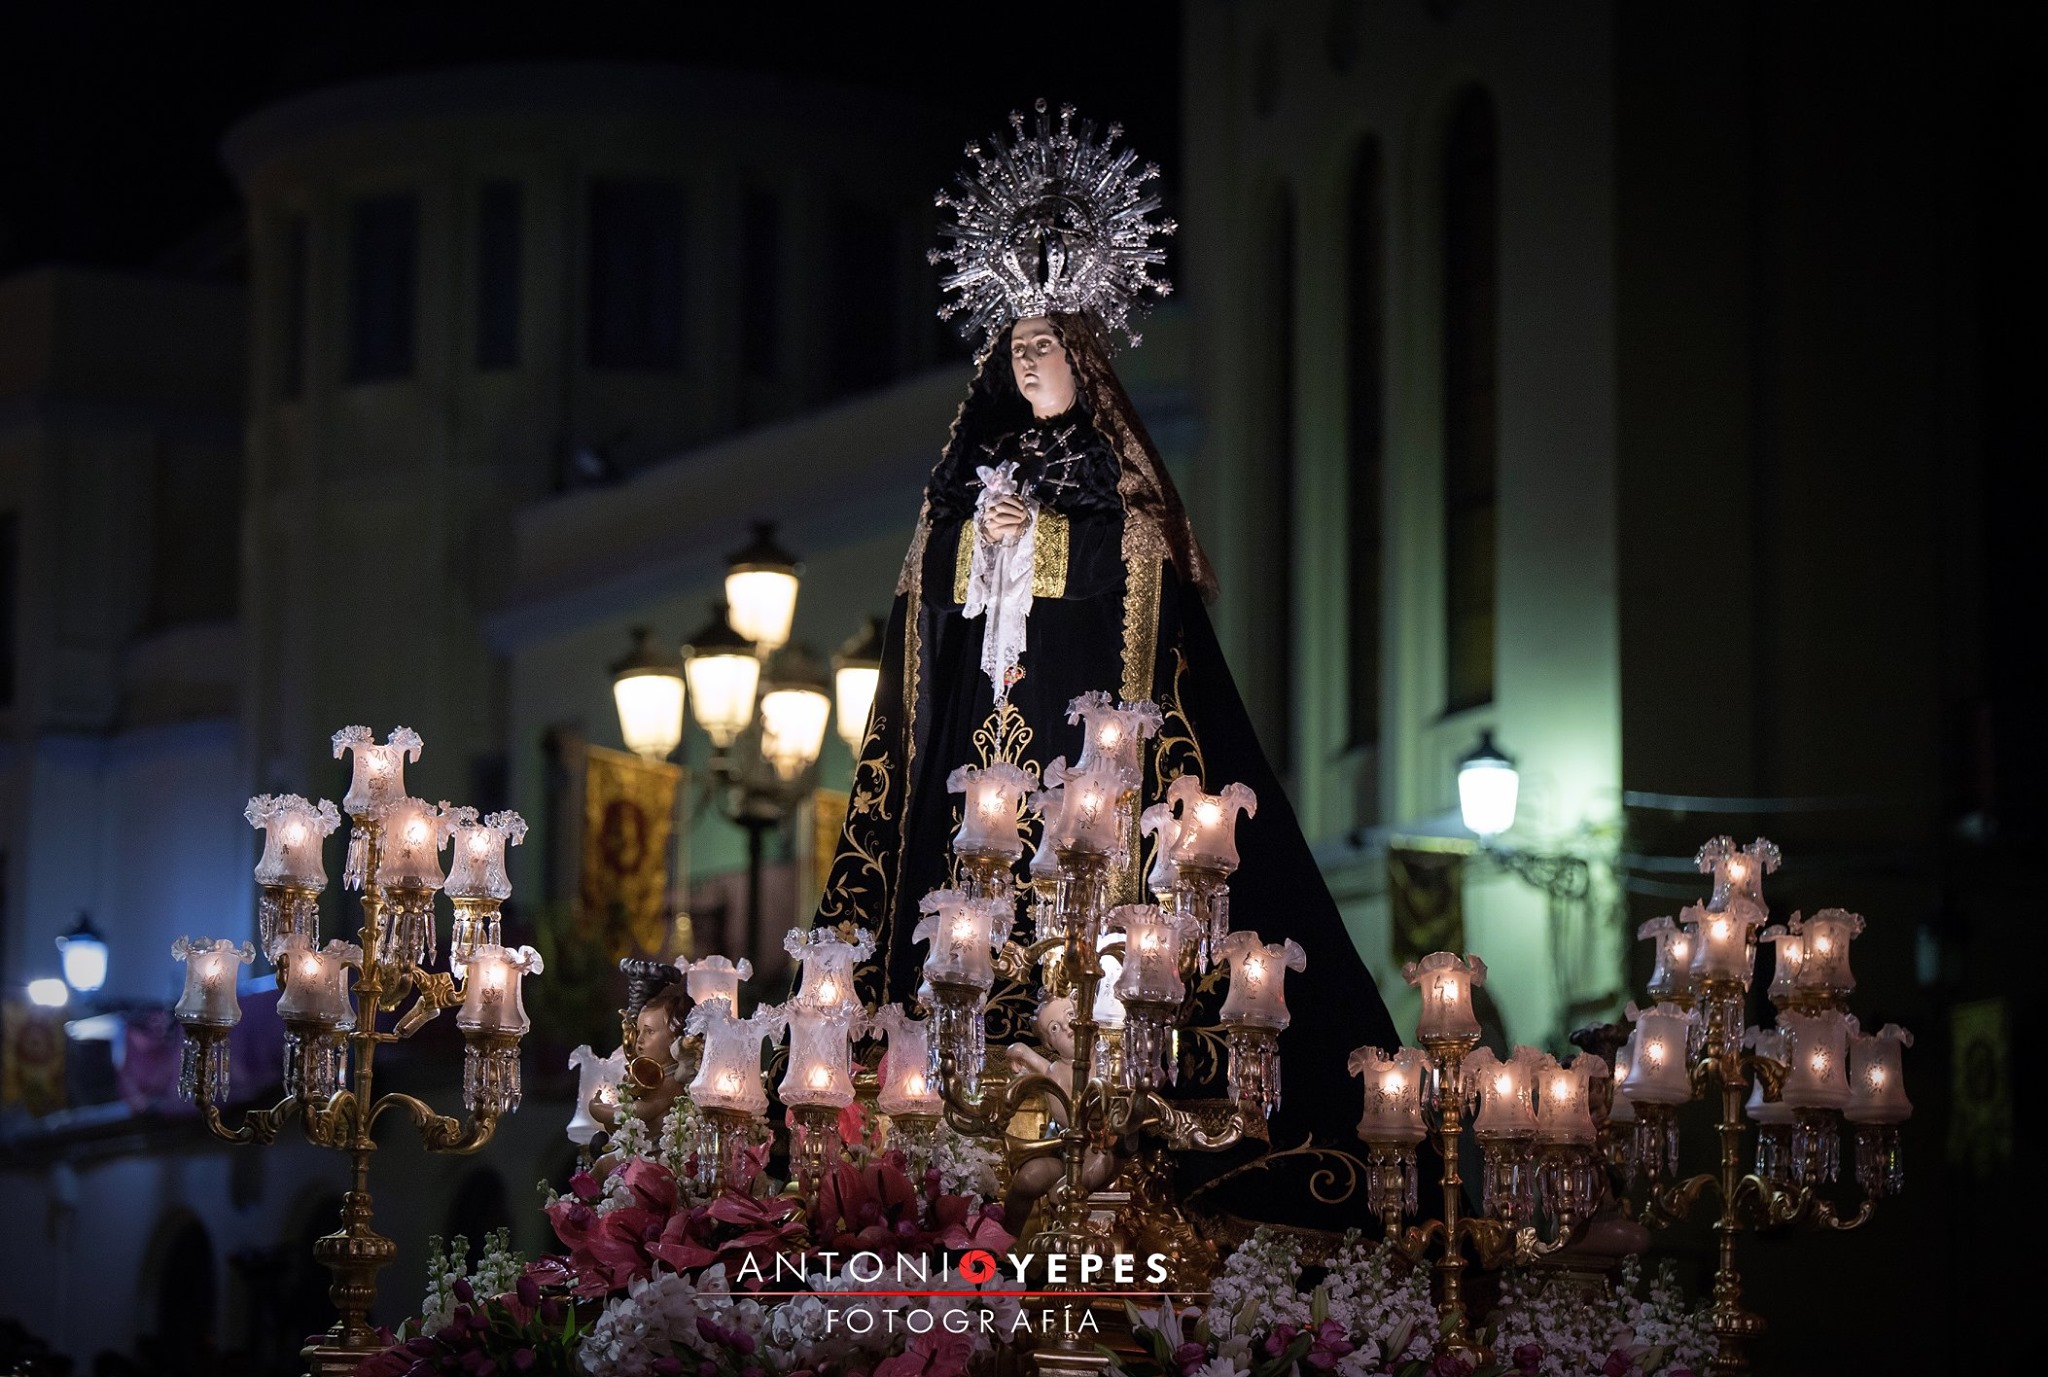 Foto: Antonio Yepes. Imagen de Ntra. Sra. de la Soledad (escultor ánimo) a su paso en la Procesión del Santo Entierro, en la noche del Viernes Santo. 